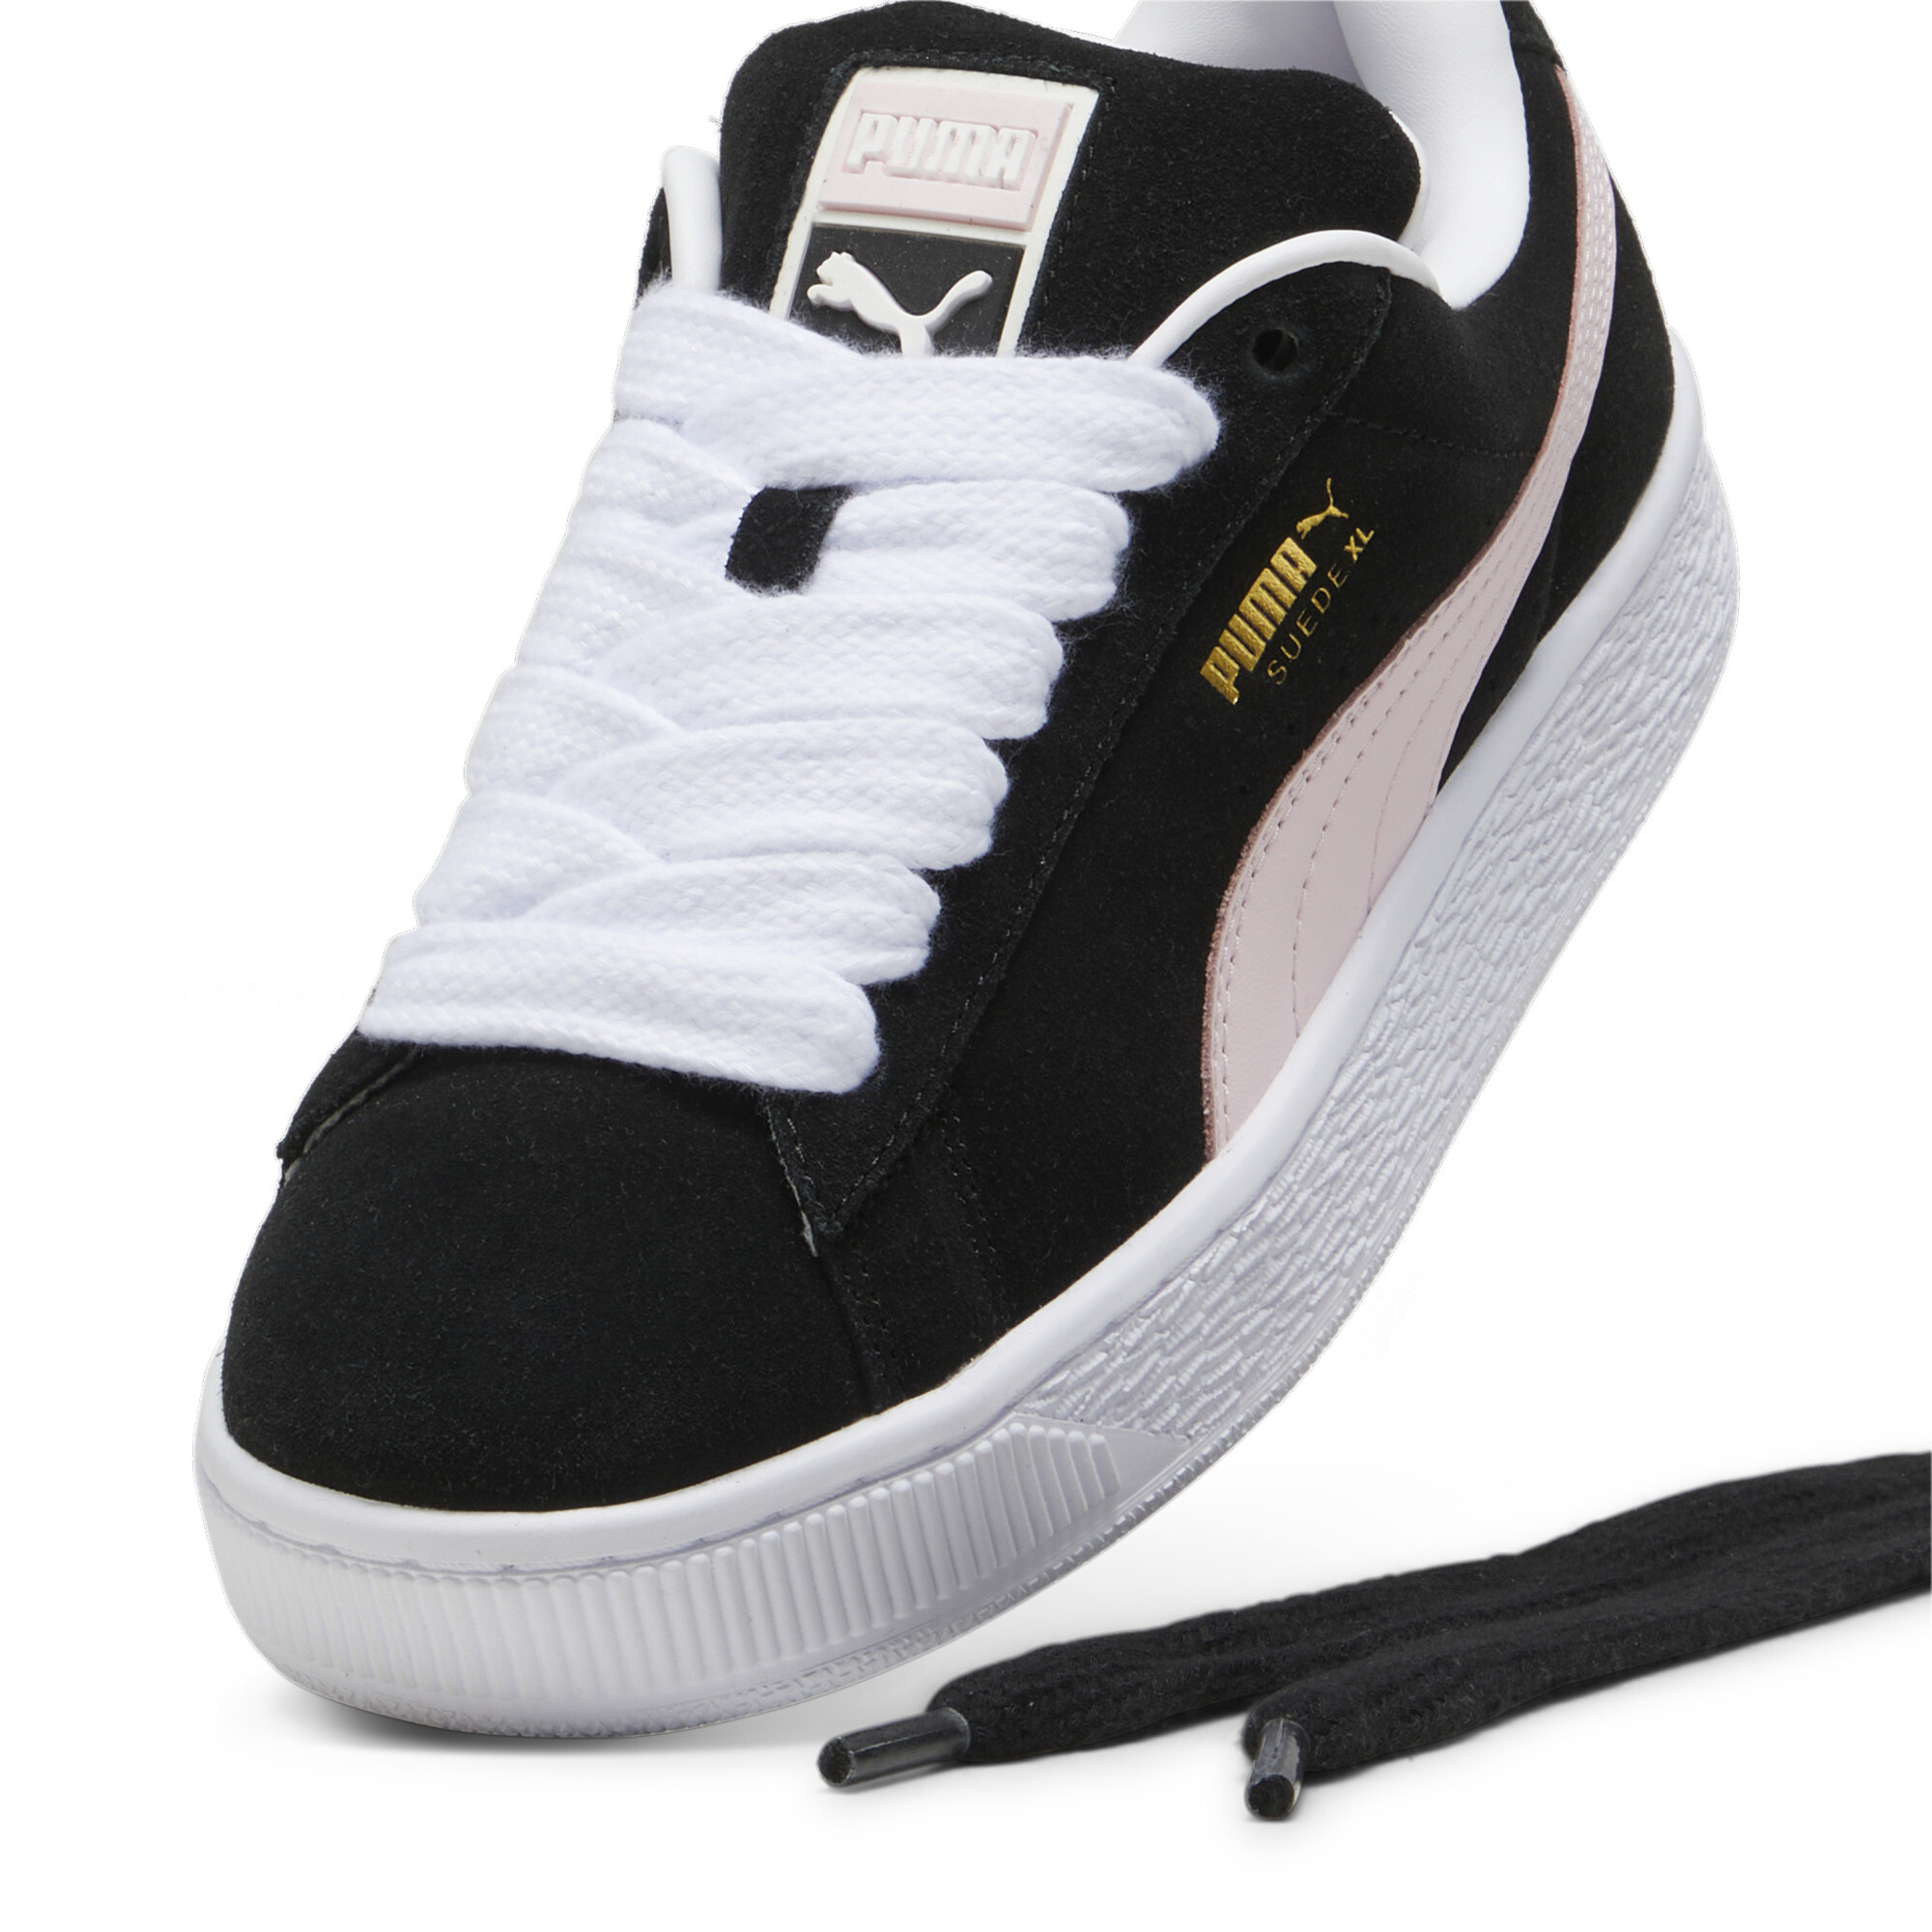 Puma Suede XL Sneakers Unisex, Black, Size 45, Shoes